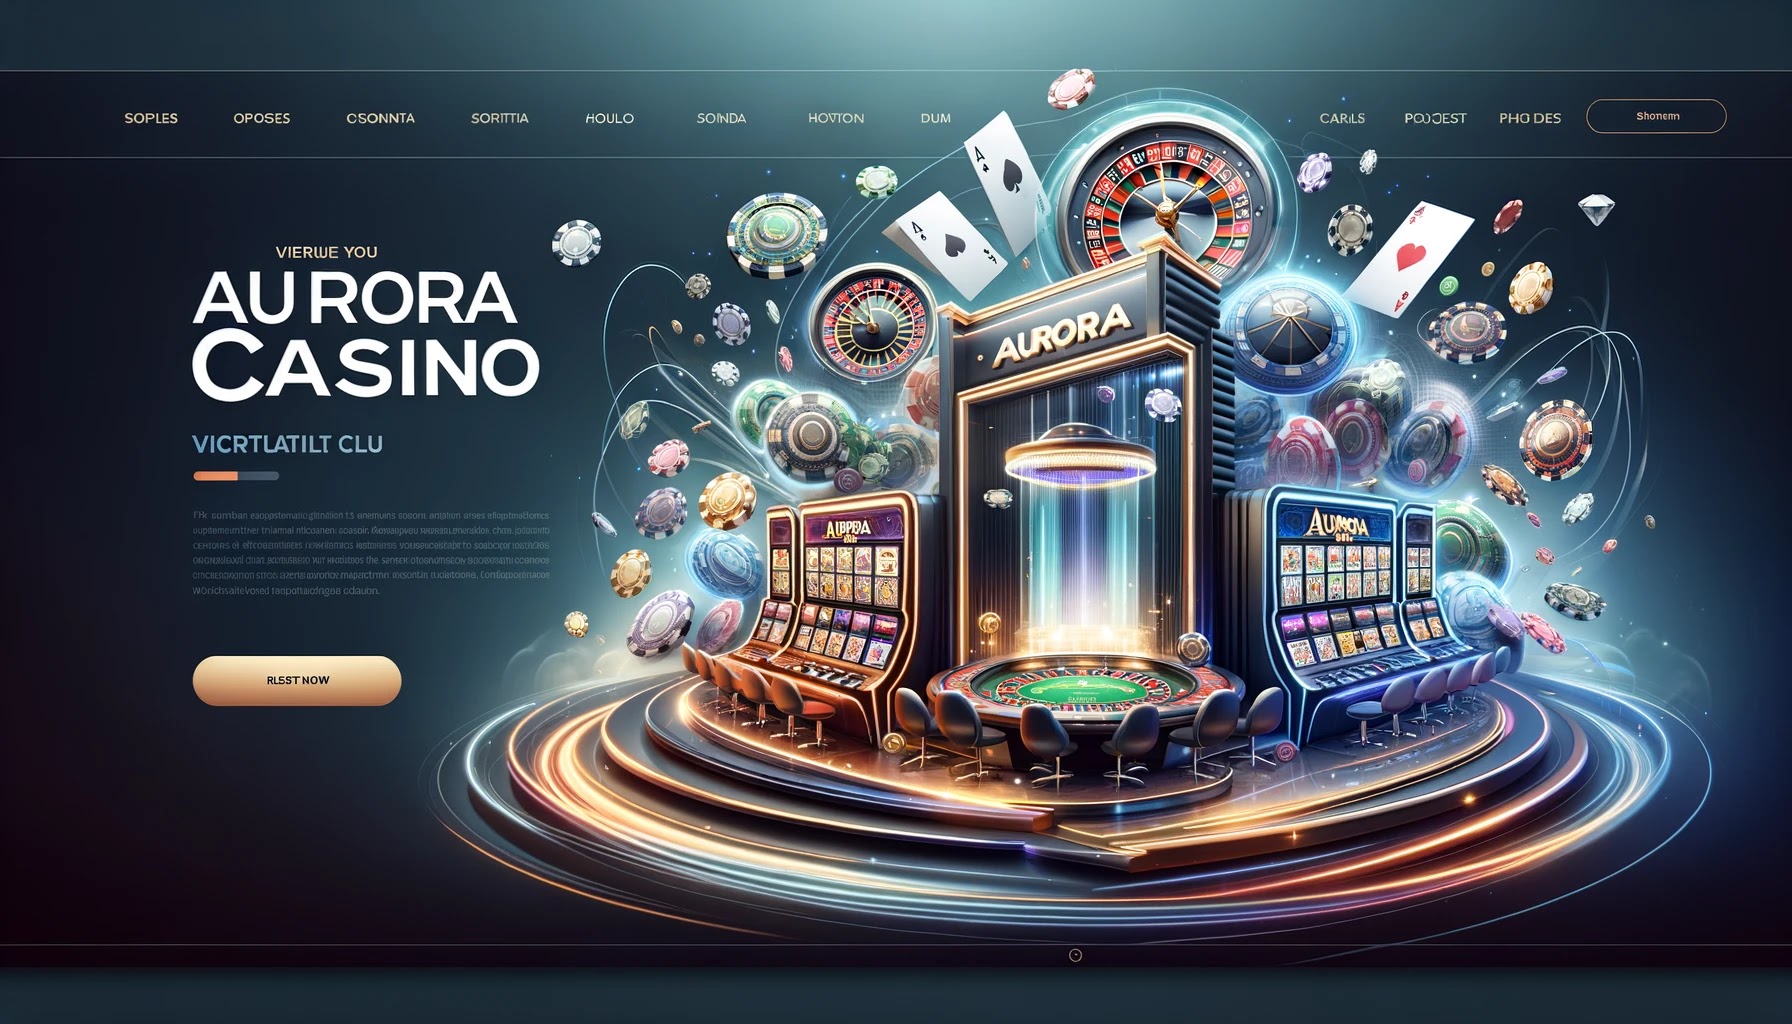   Aurora Casino:   